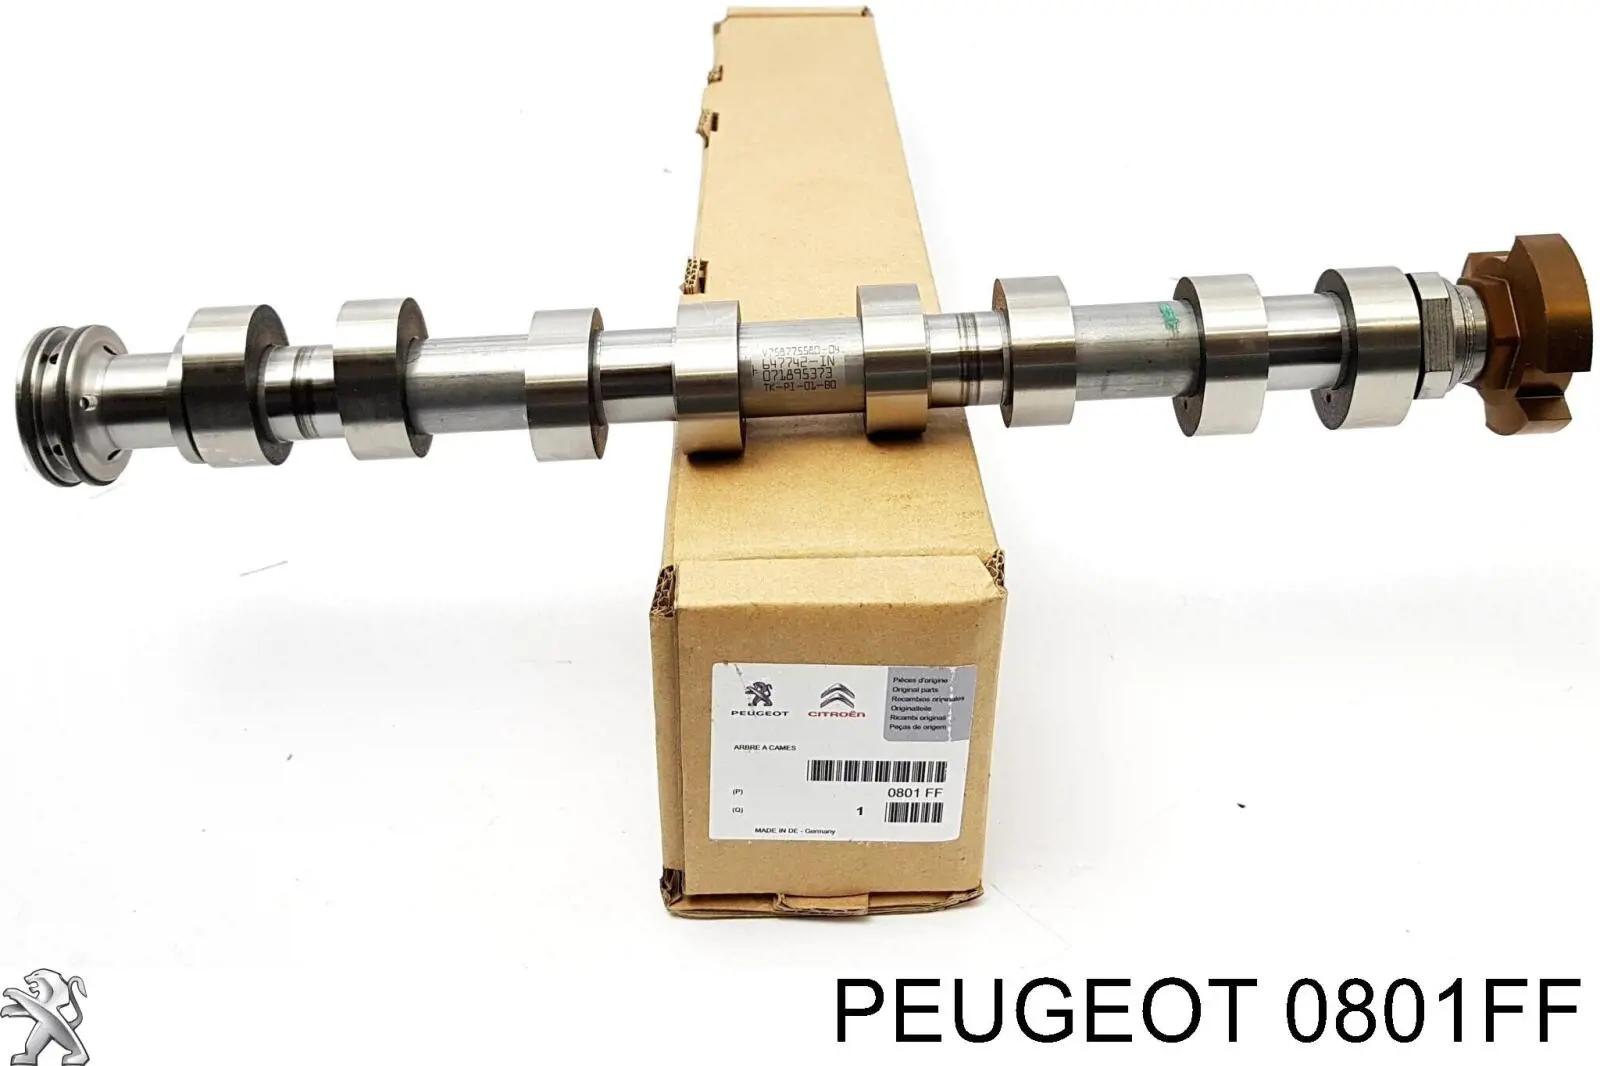 0801FF Peugeot/Citroen árvore distribuidora de motor de admissão